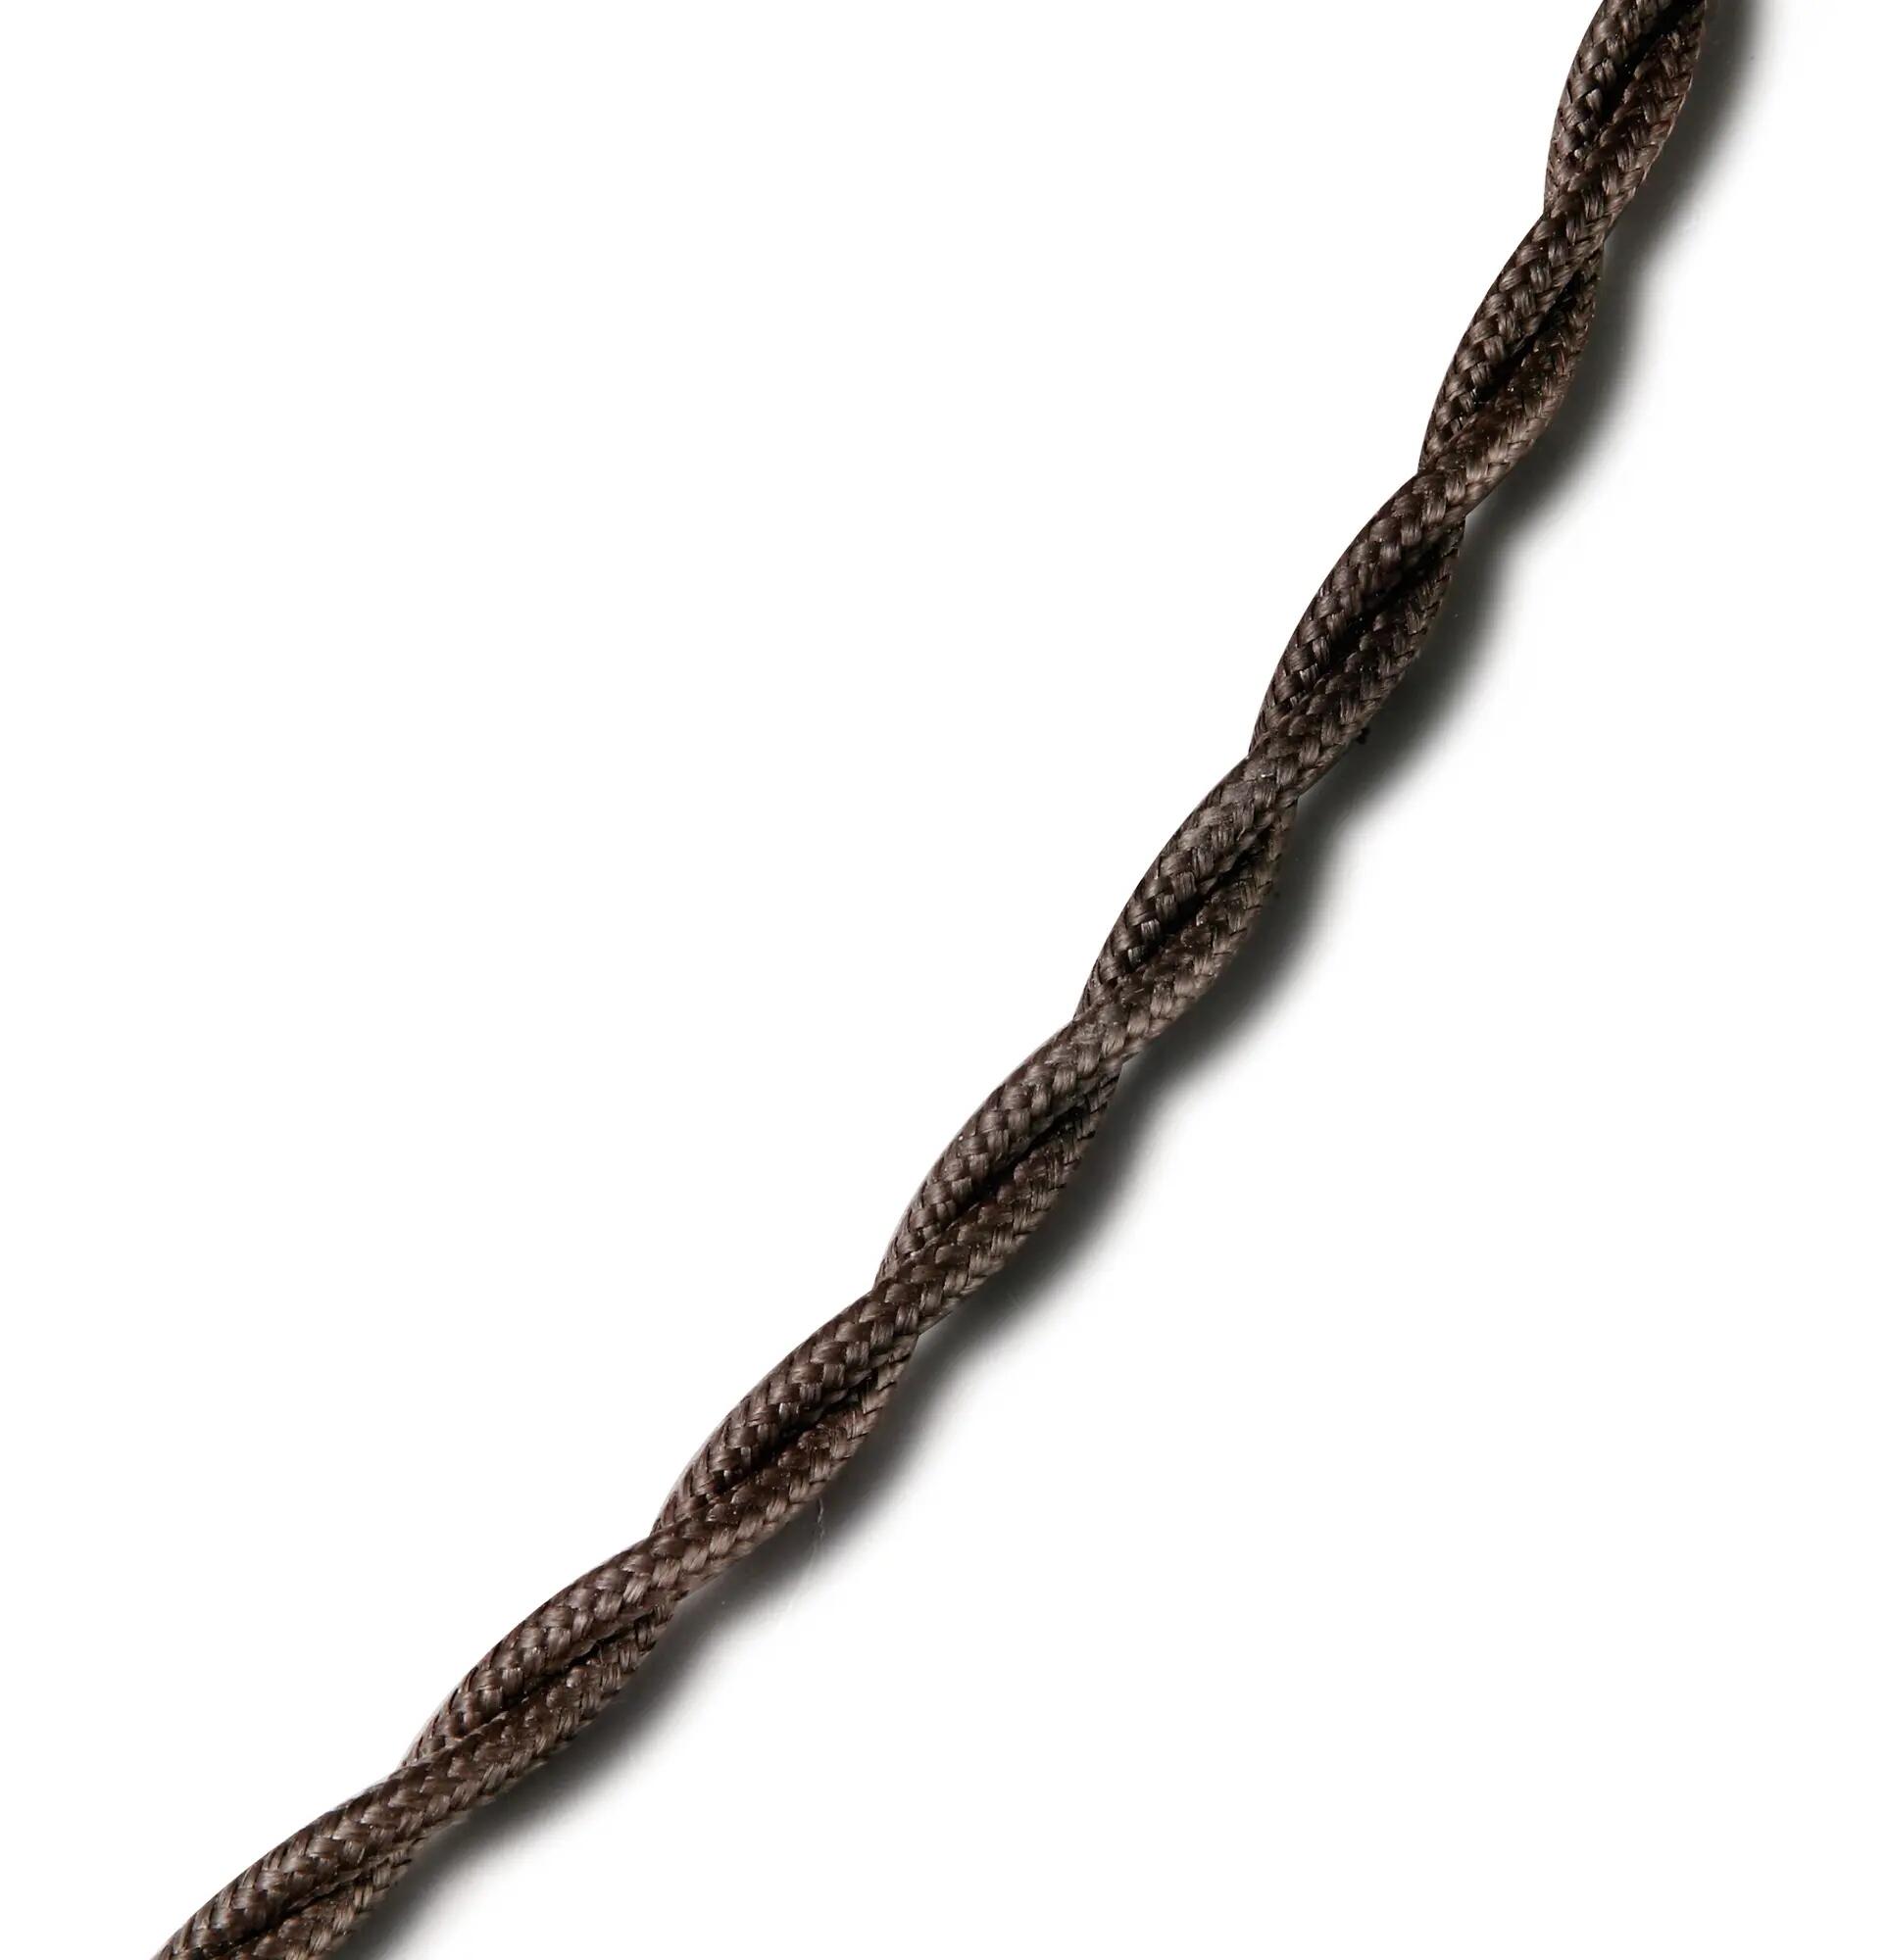 Comprar cable trenzado imitación al antiguo de algodón ignifugo marrón.  fontini a precio online